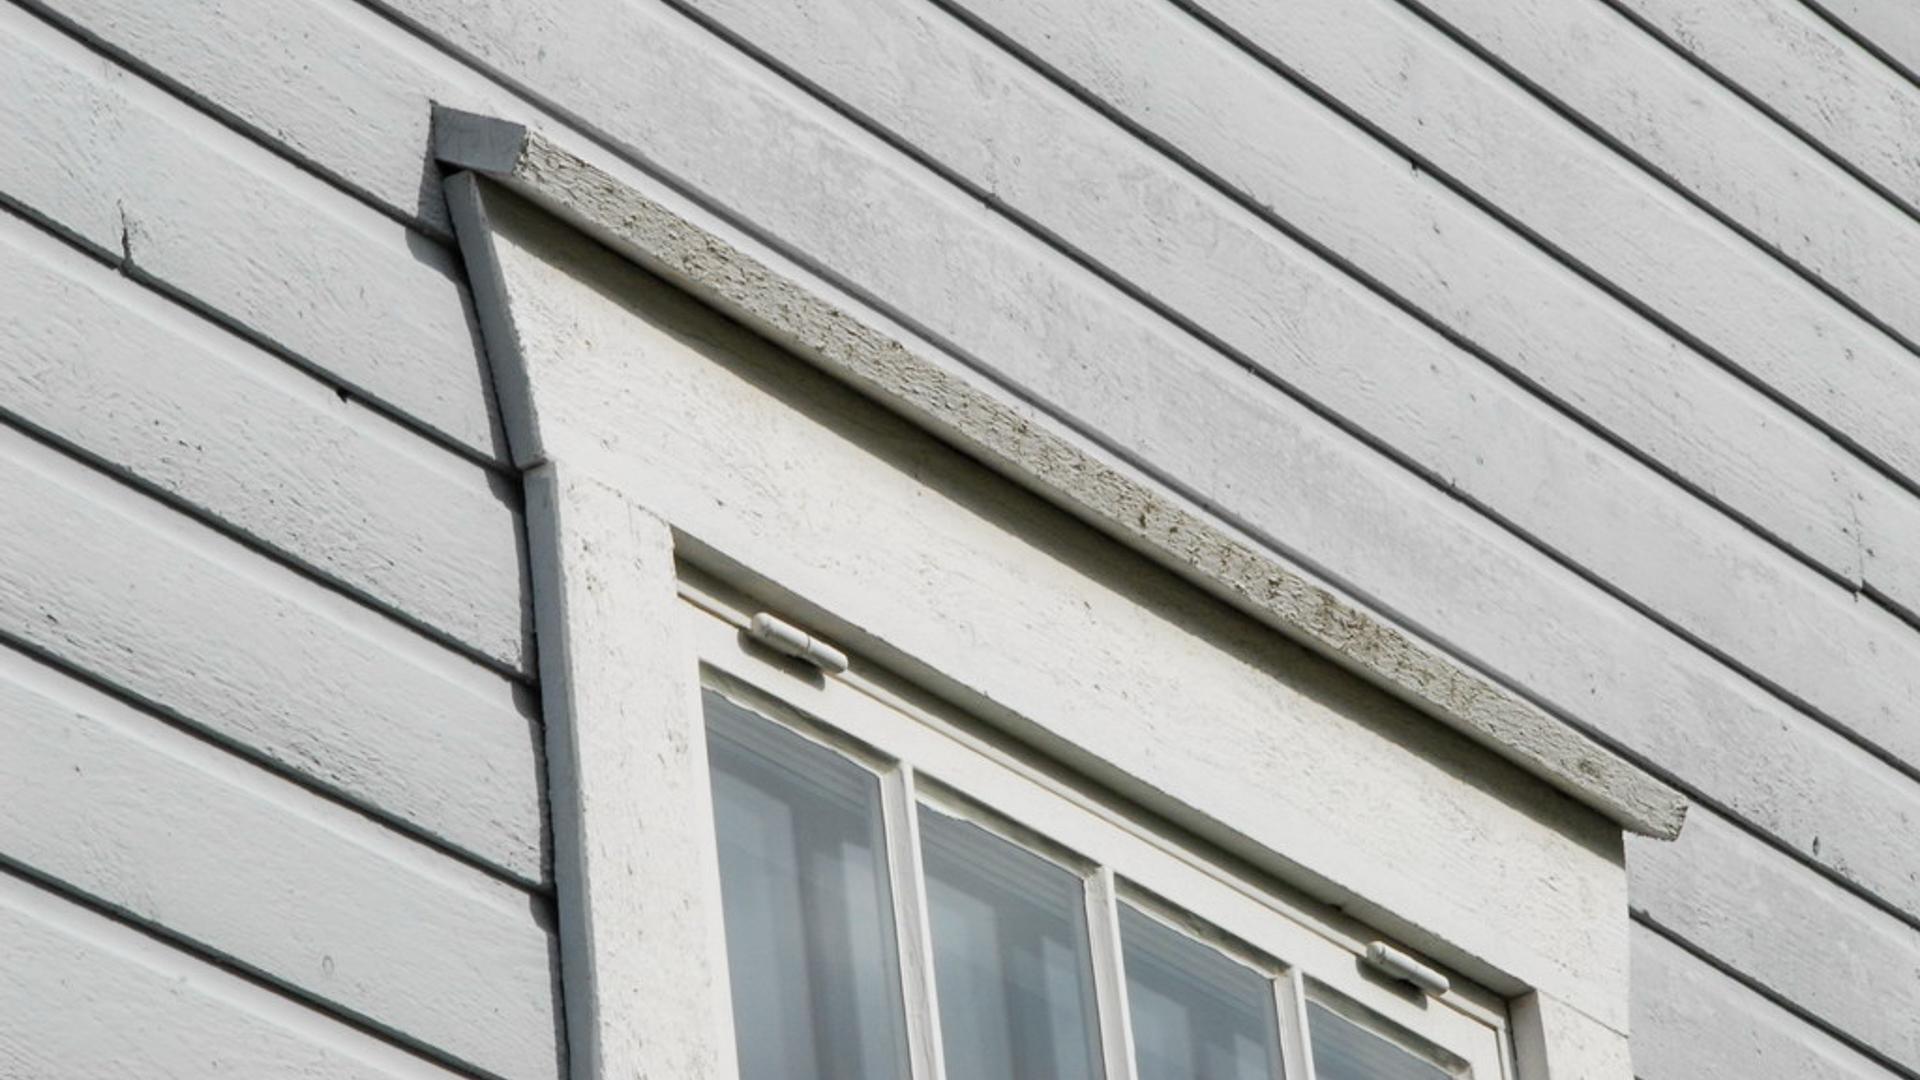 Fensteranschluss mit einem "Opferbrett" in einer horizontalen Fassade.